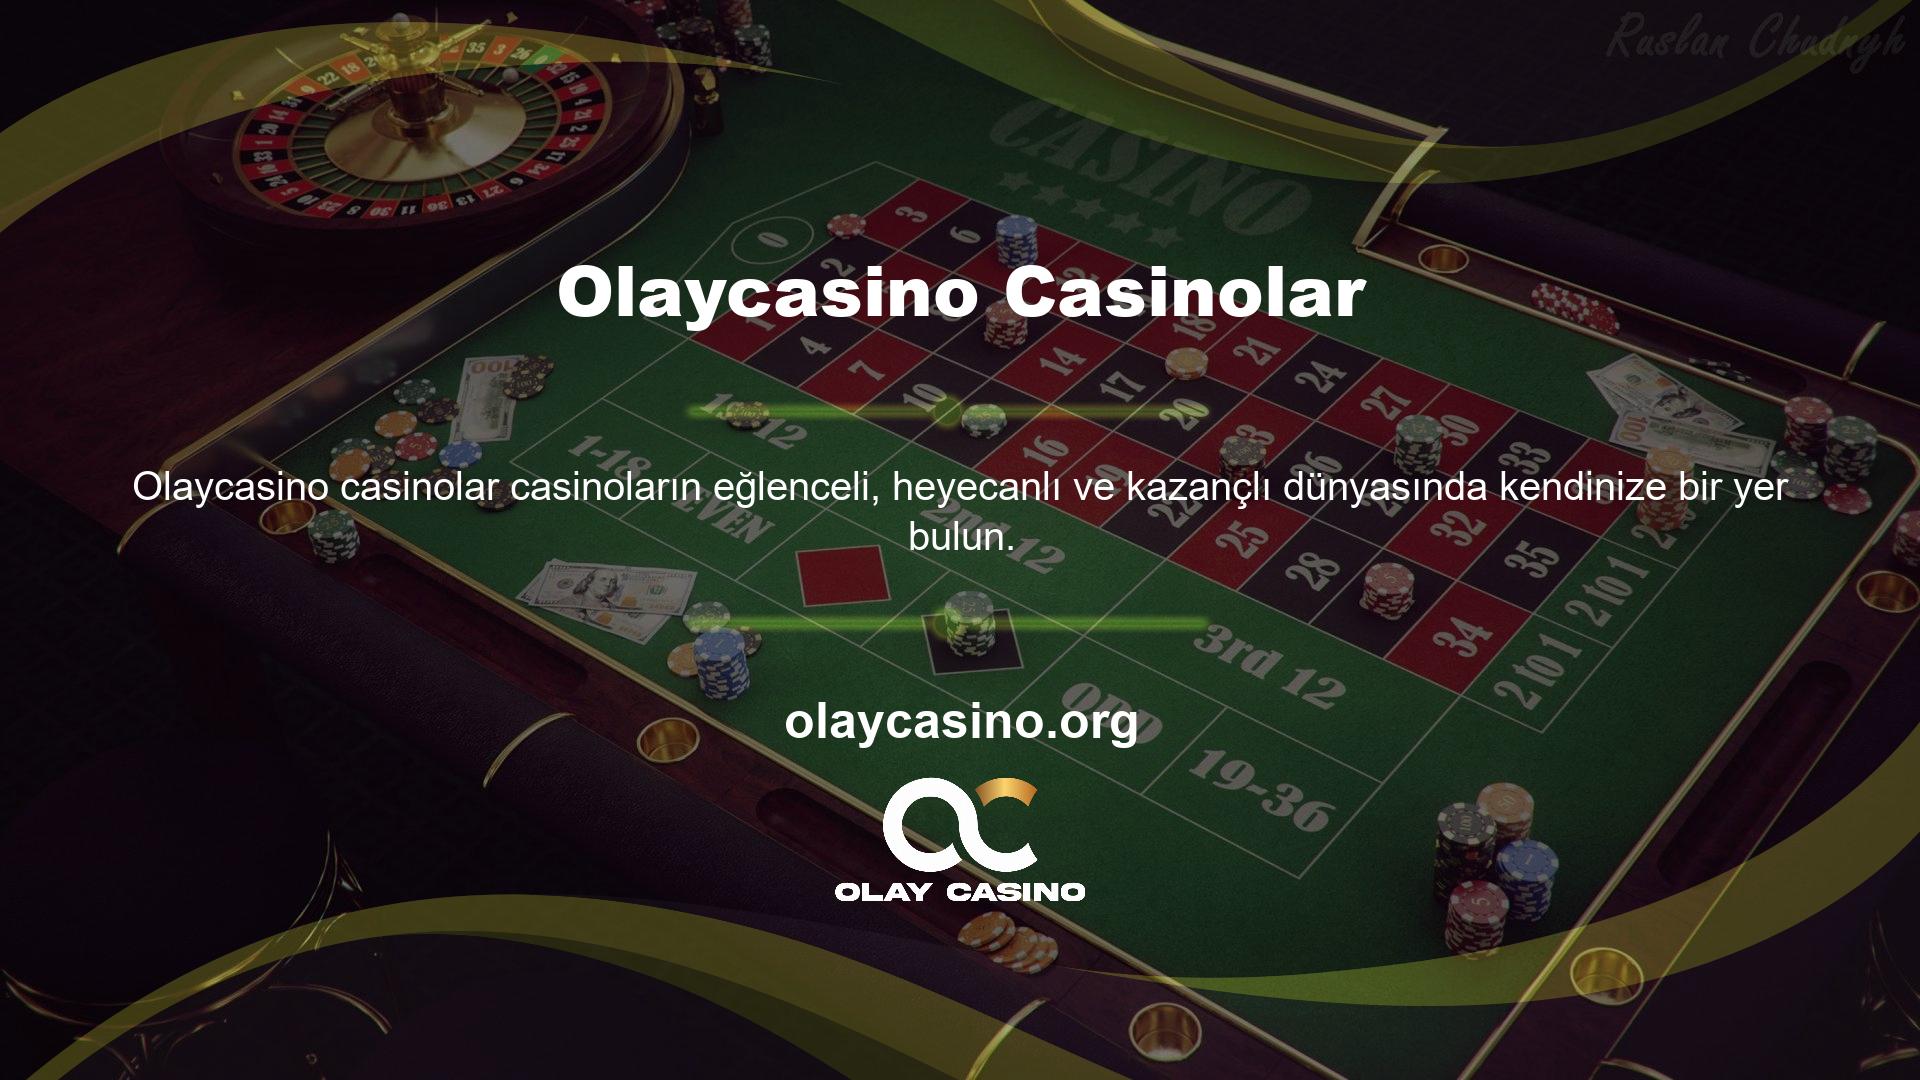 Casino oyunları, birçok özelliği ile hem oyun türlerinde hem de birçok alternatif oyunlarda tam bir oyun keyfi sunuyor